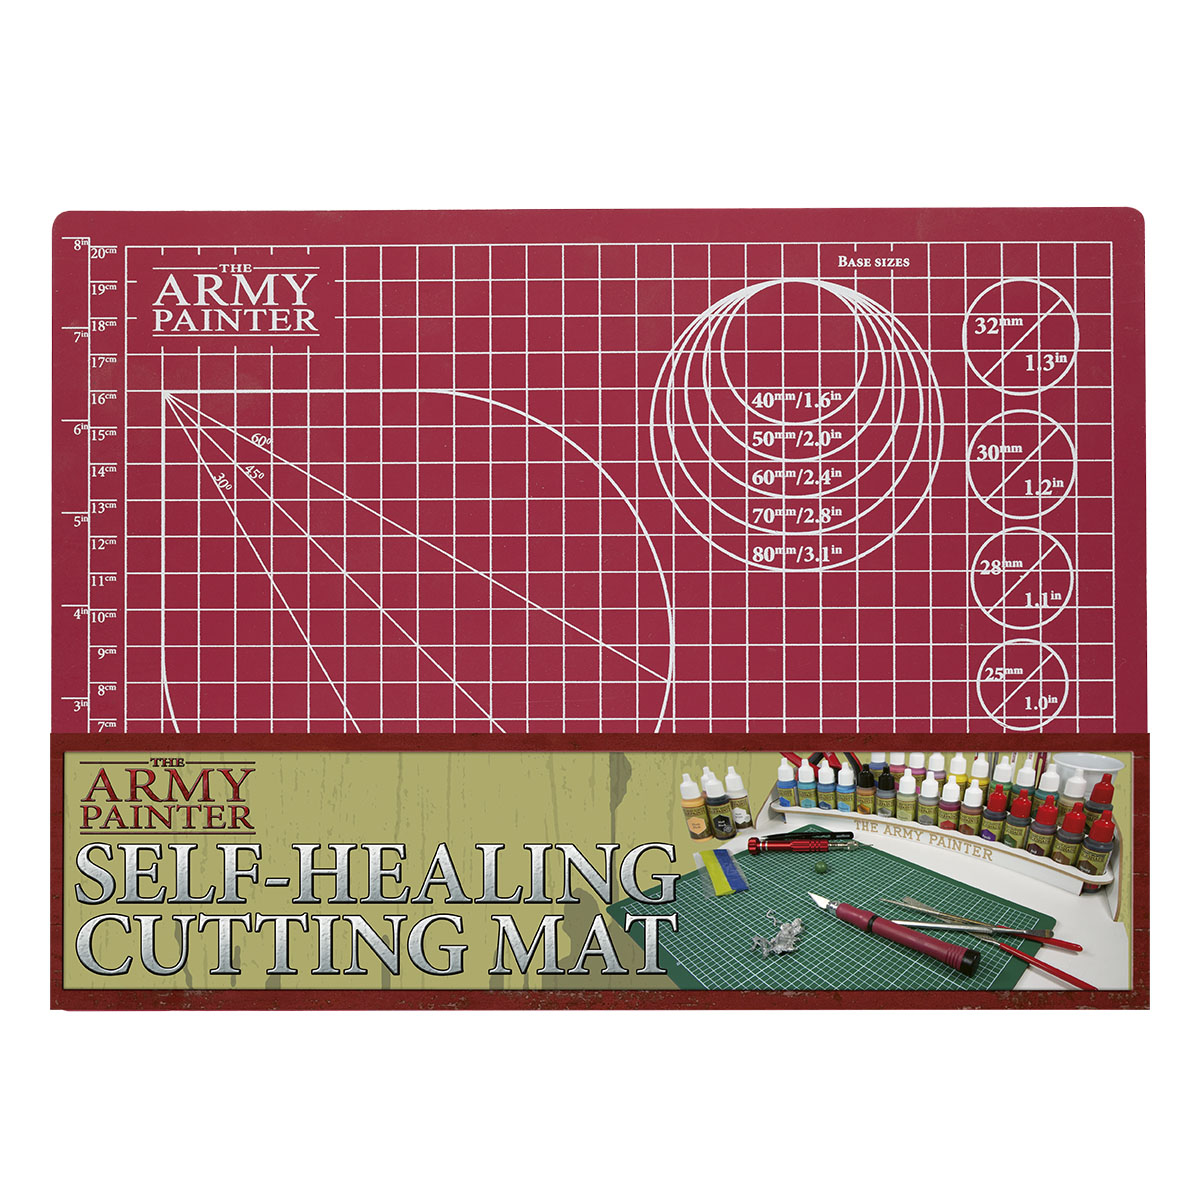 Army Painter Lõikematt - Self-healing Cutting mat